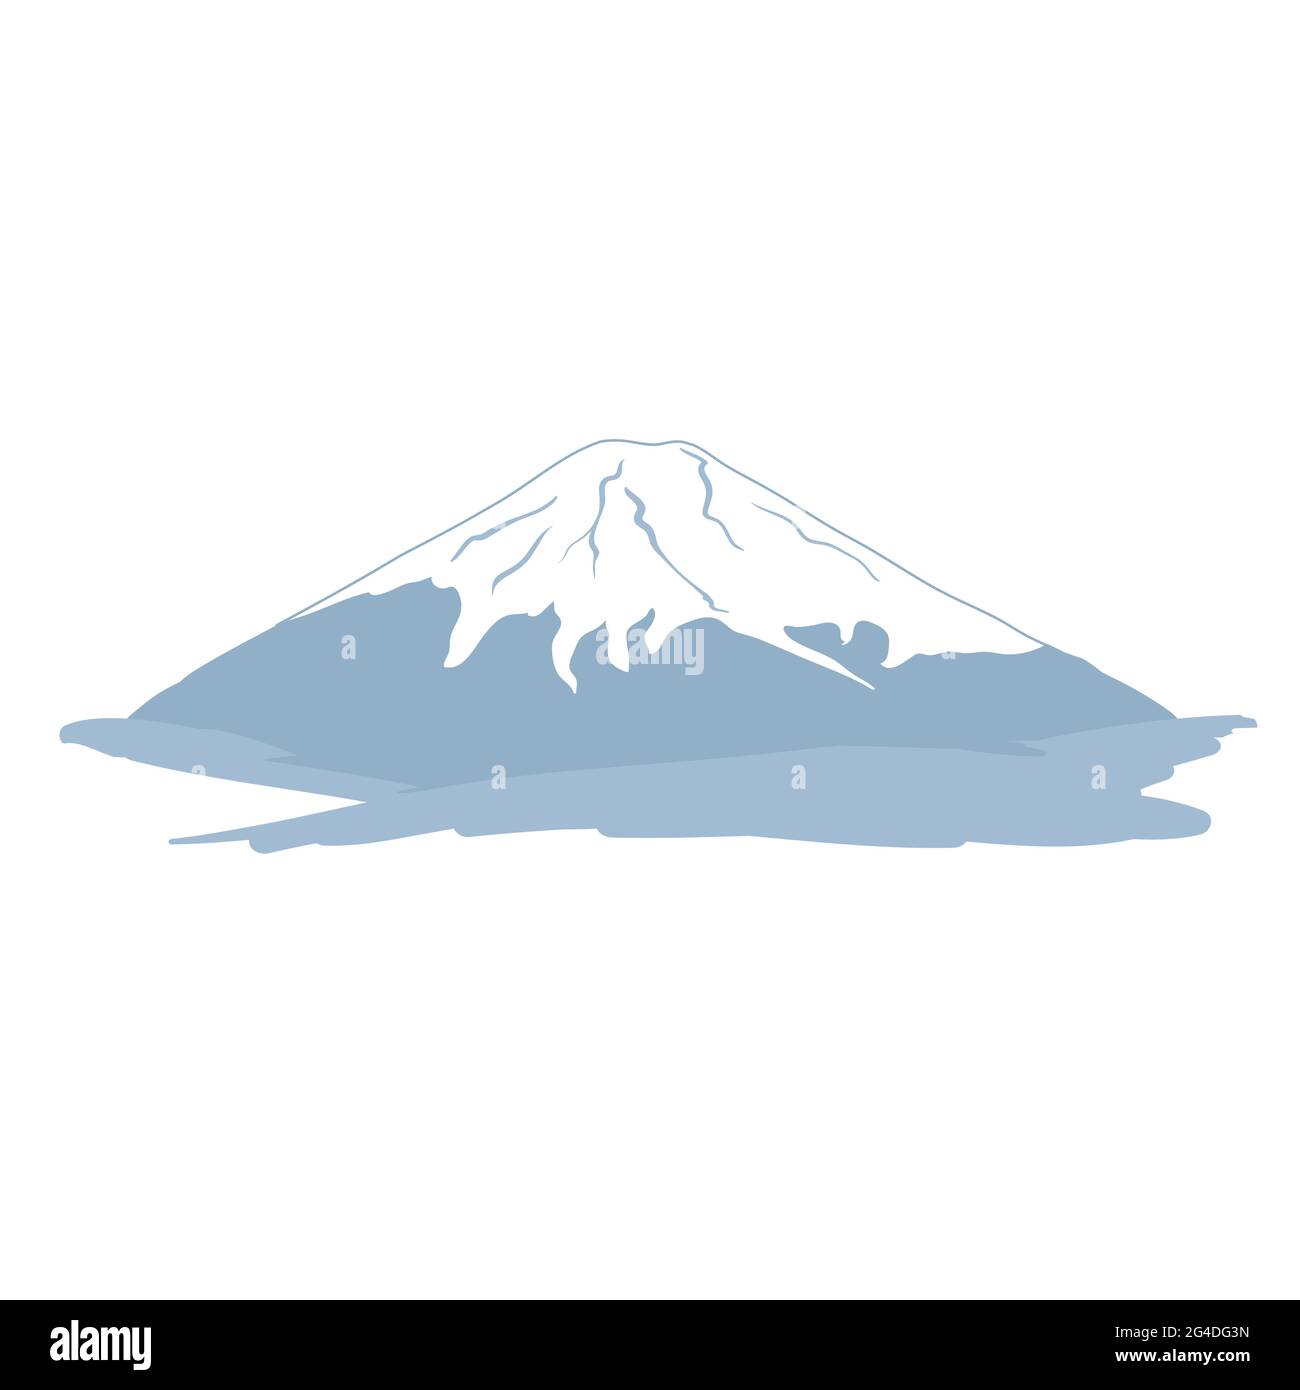 Montaña azul aislada con pico nevado.Monte Fuji.Japan.Stock ilustración de vectores. Ilustración del Vector